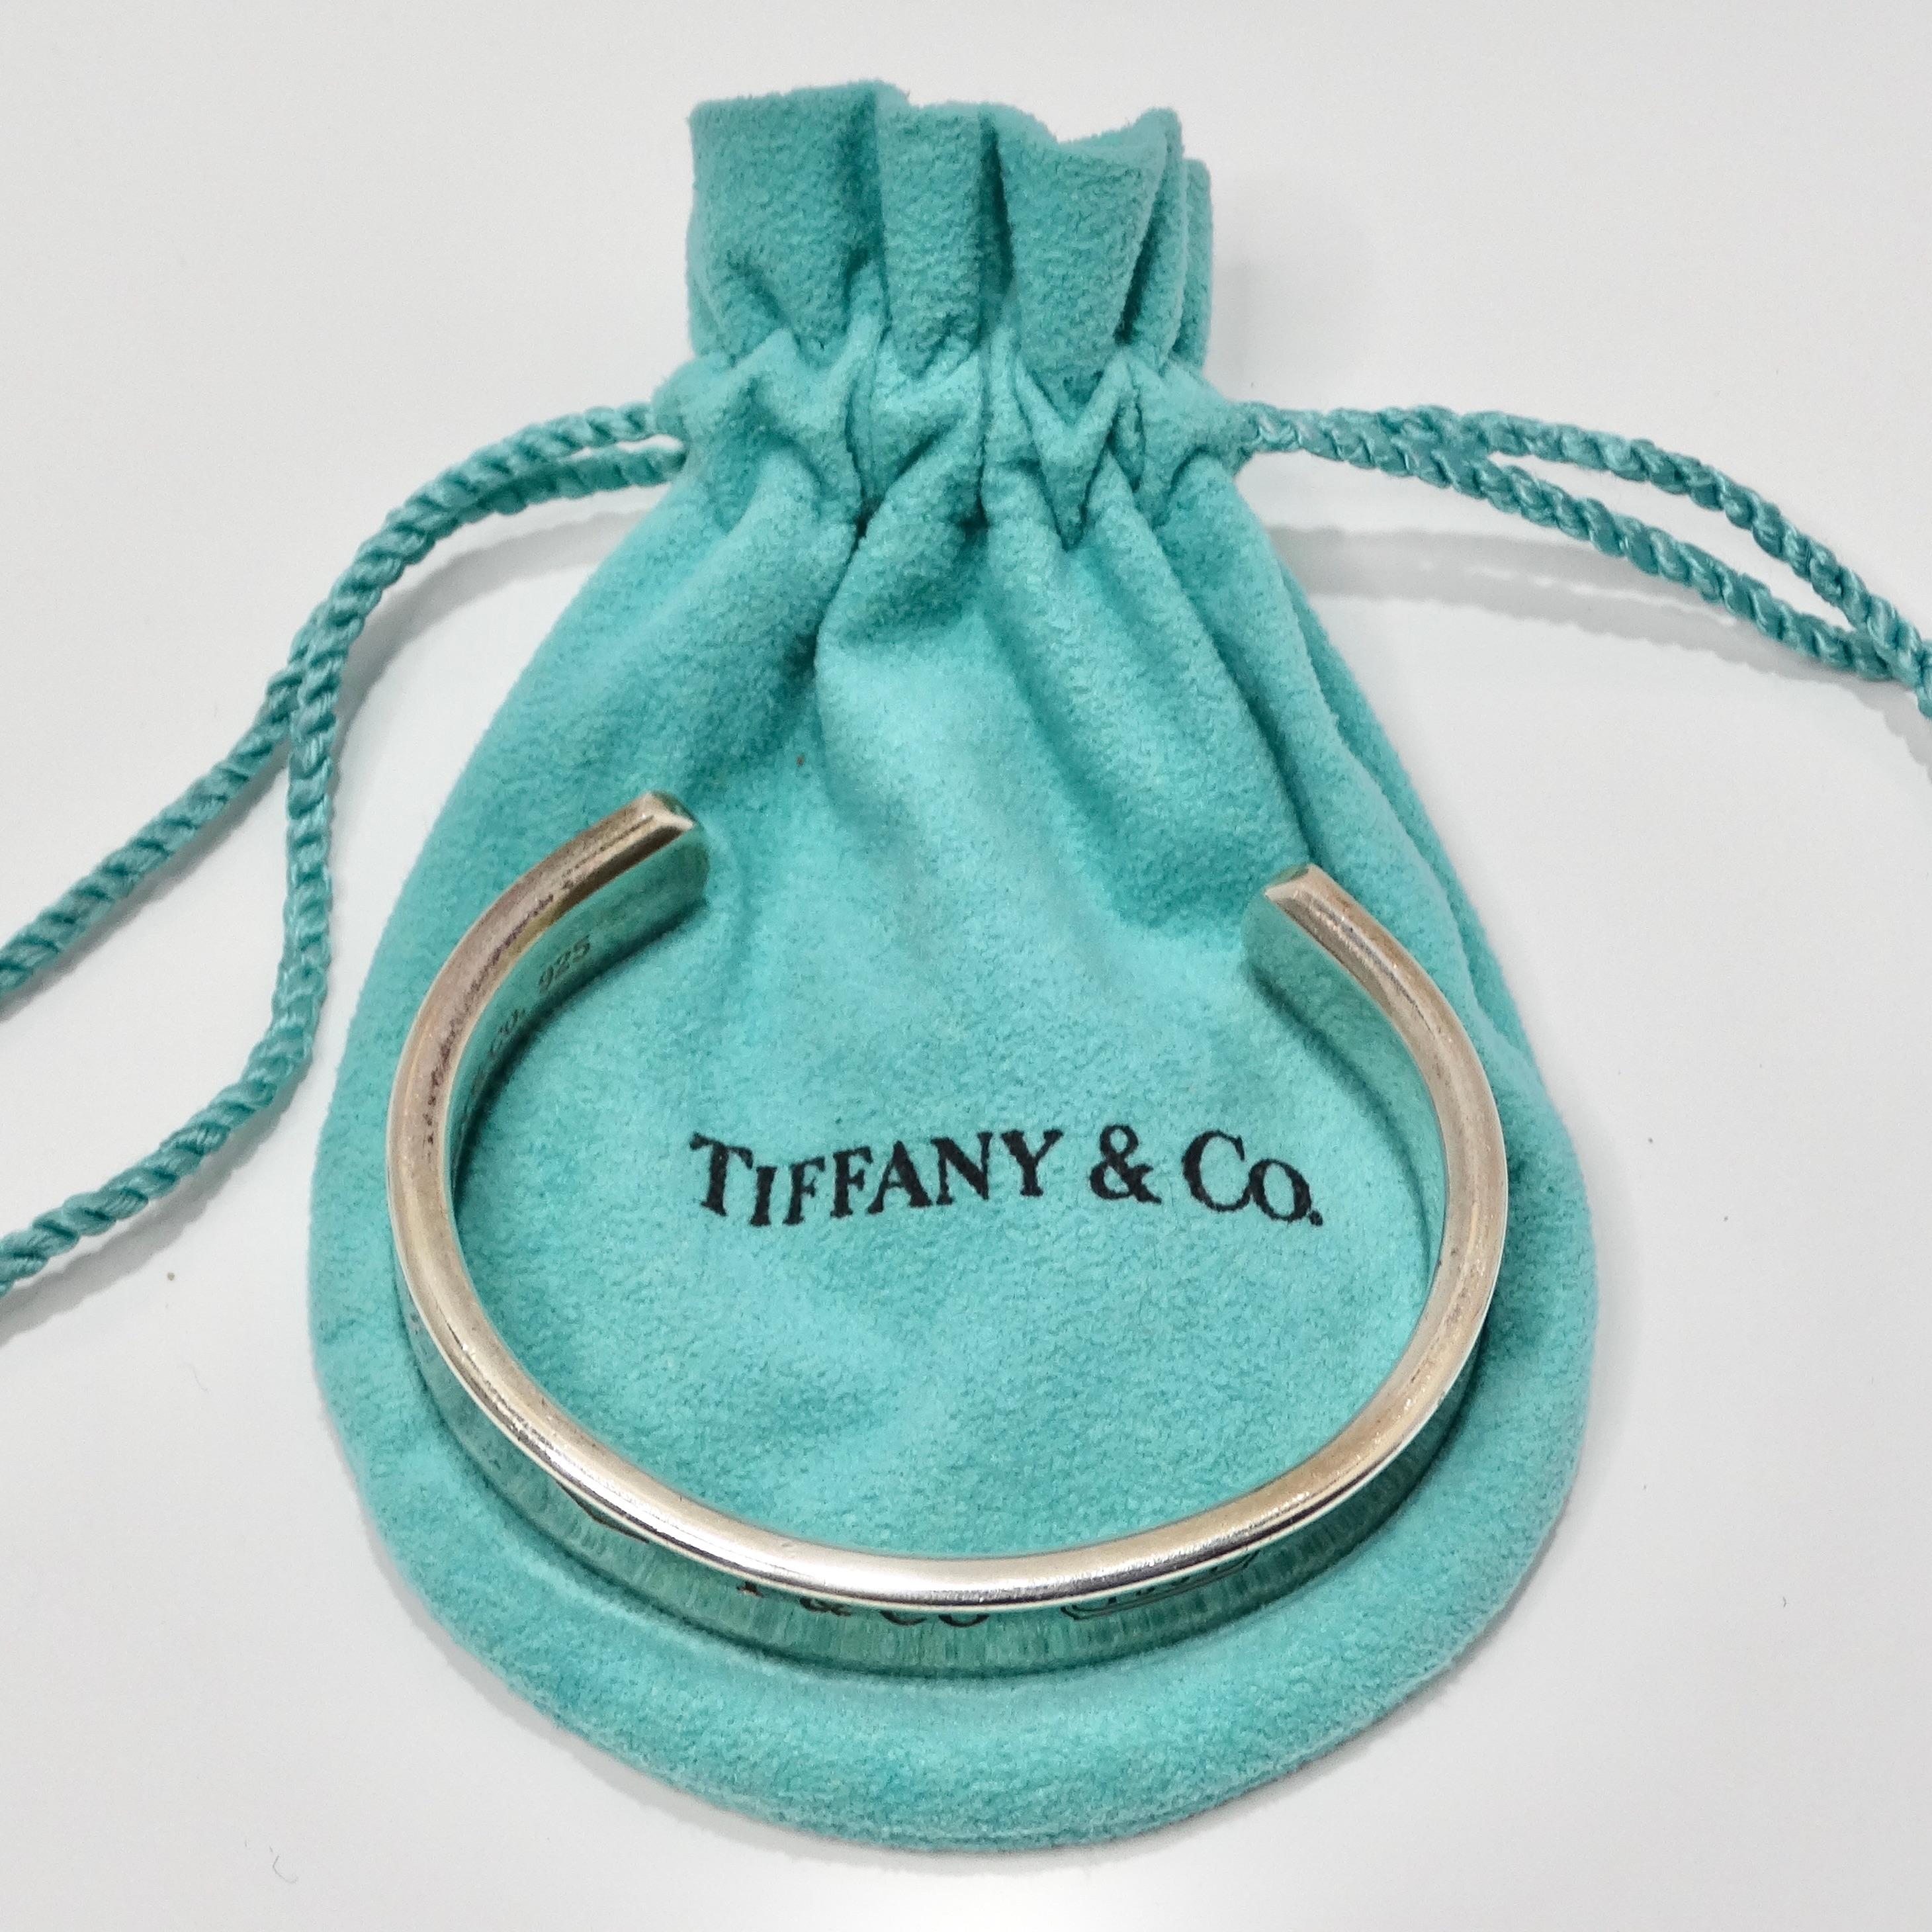 Voici le bracelet manchette en argent 1925 gravé de Tiffany & Co 1997, une pièce intemporelle qui respire l'élégance et la sophistication.

Fabriqué en argent sterling 925 de haute qualité, ce bracelet manchette présente un superbe effet miroir qui